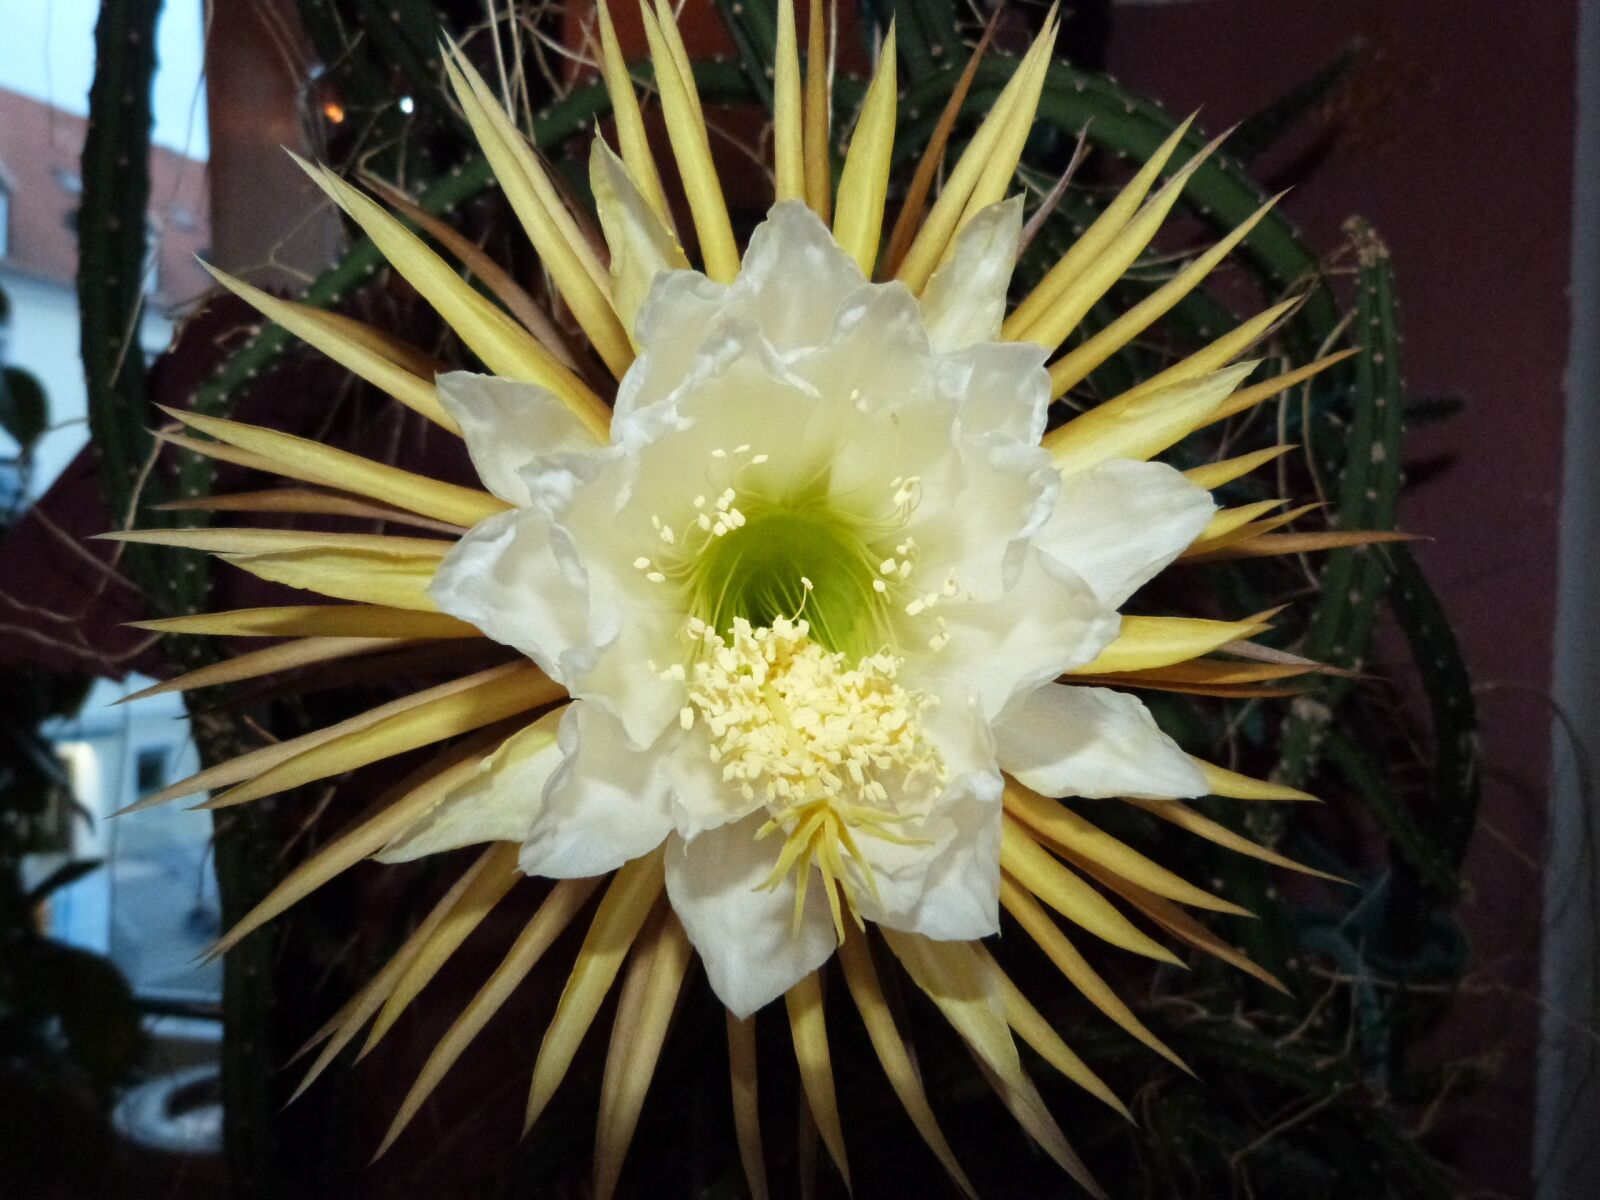 Panasonic Lumix DMC-FZ47 (Lumix DMC-FZ48) sample photo. Cactus flower, close up photography